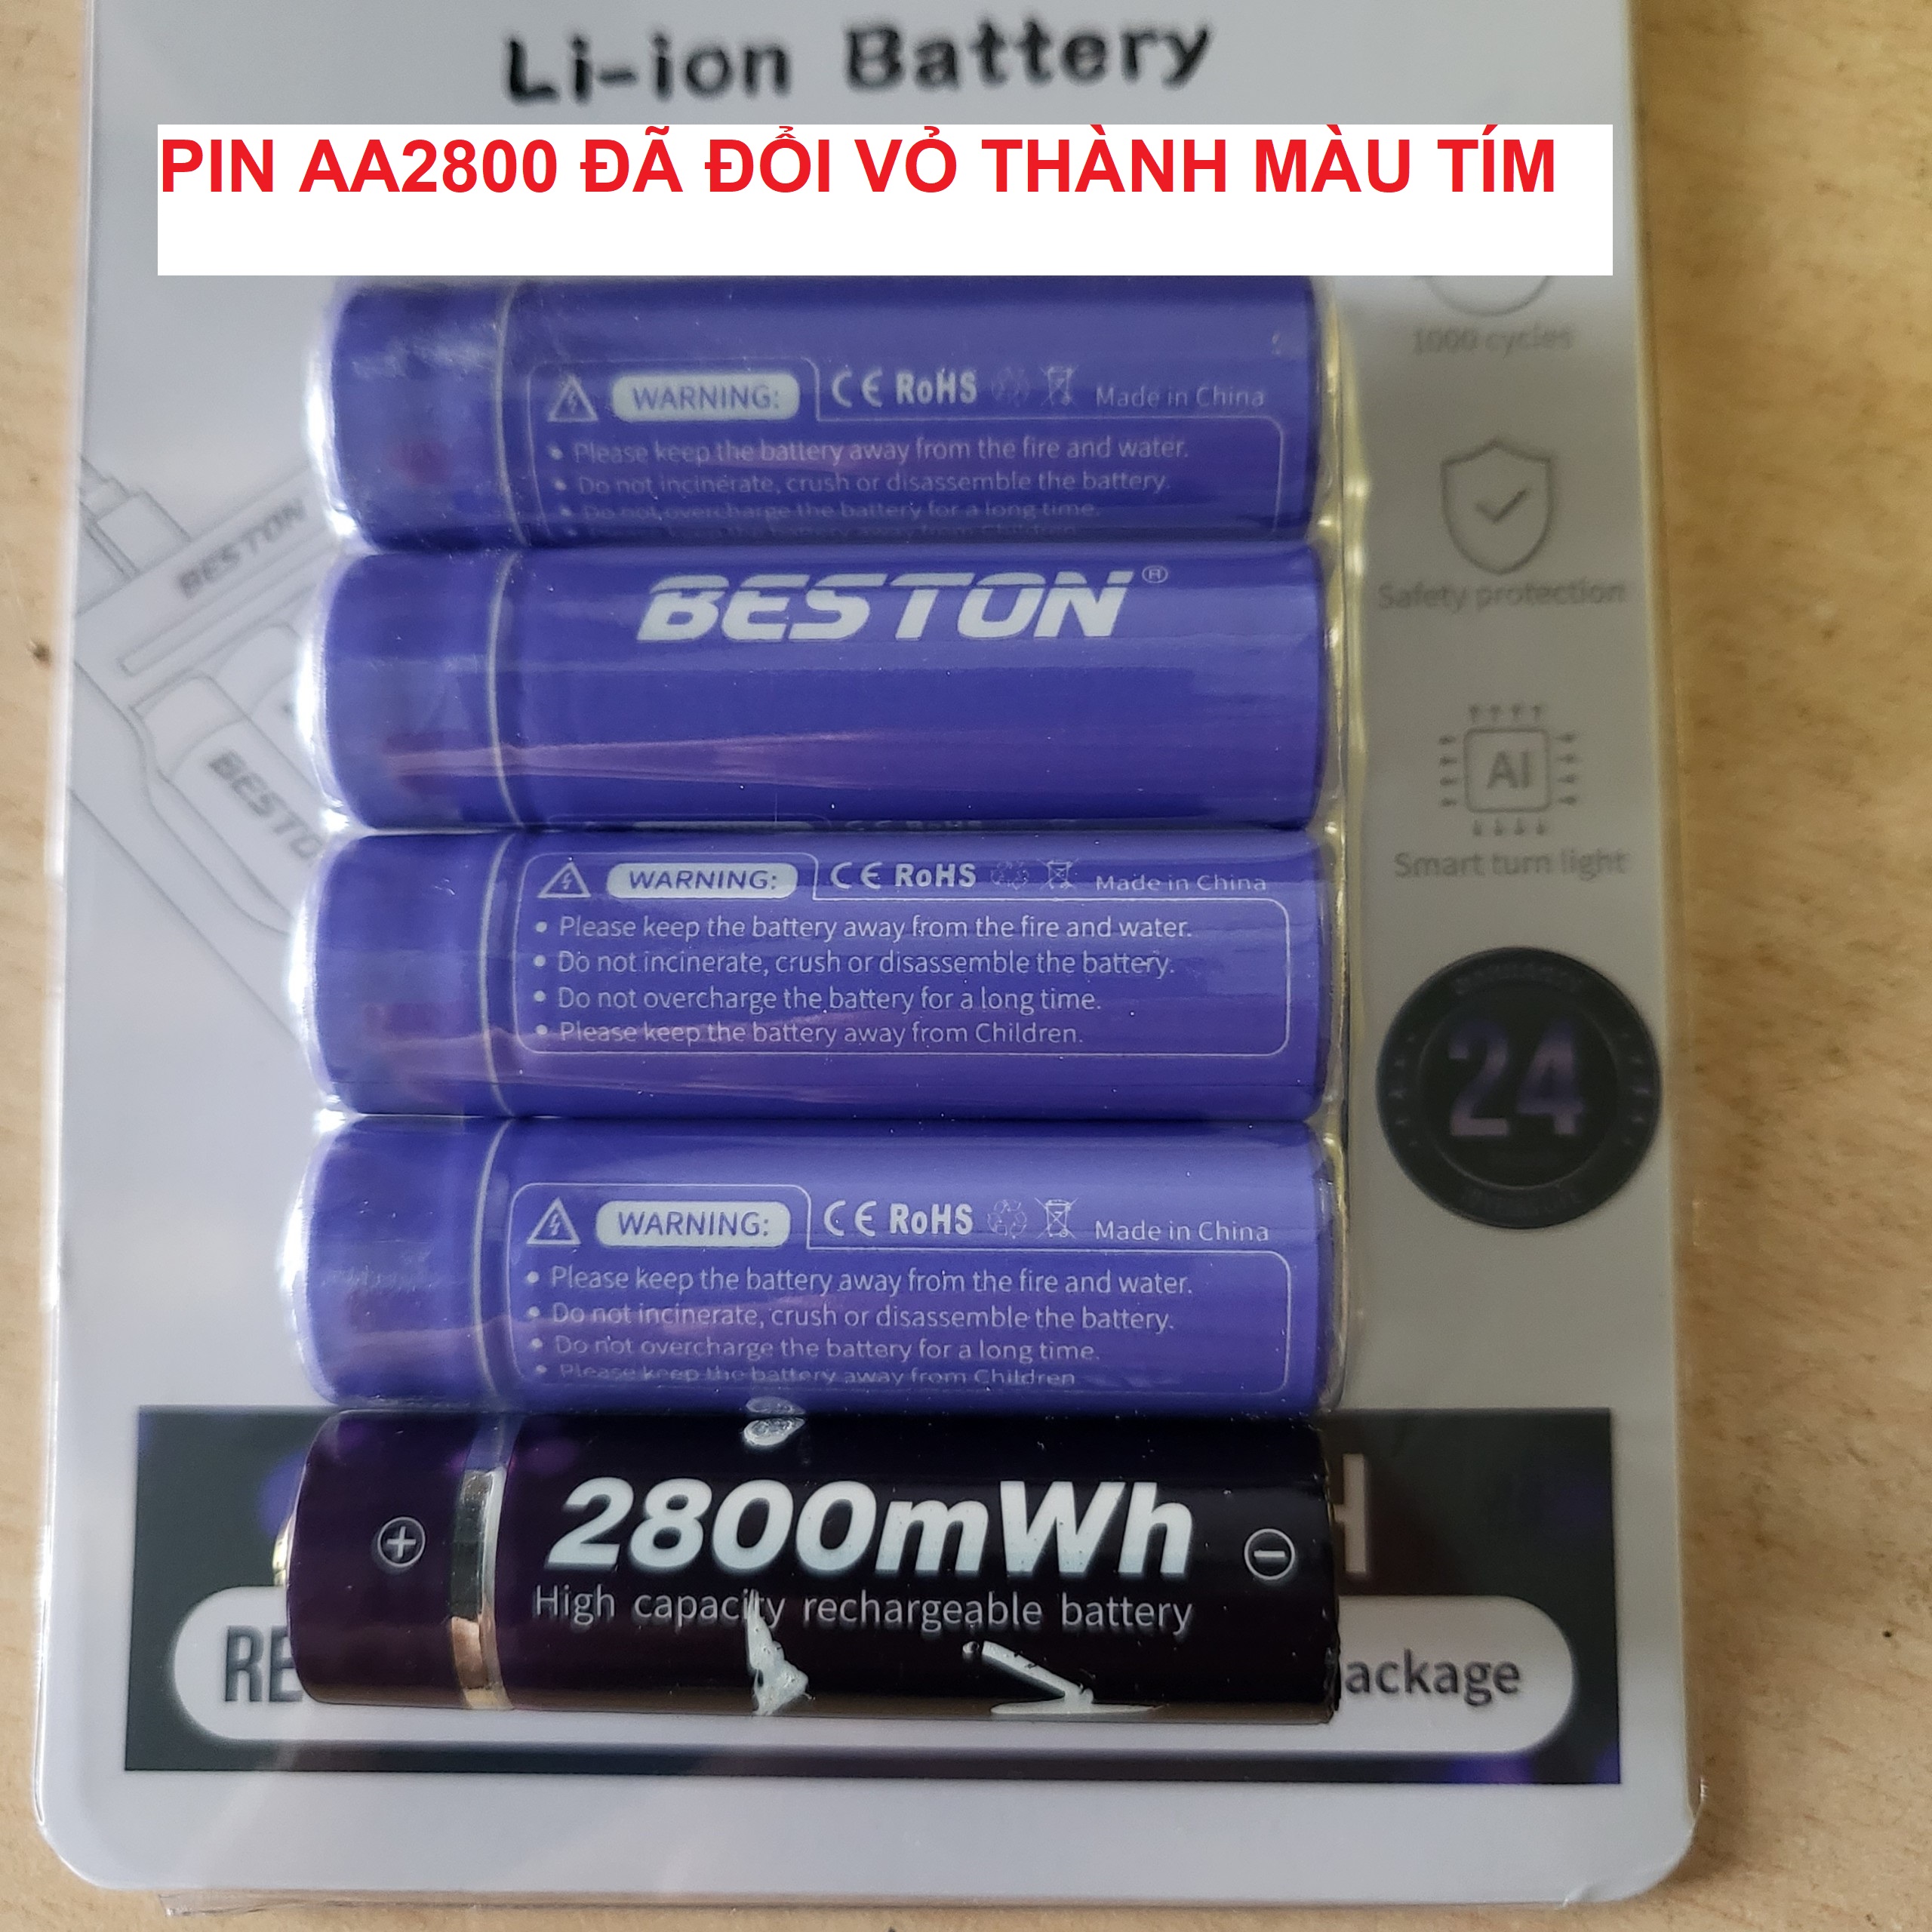 Vỉ 4 viên pin tiểu sạc AA (2A) Lithium Ion Beston 1.5V cao cấp Dung lượng cao - Hàng nhập khẩu